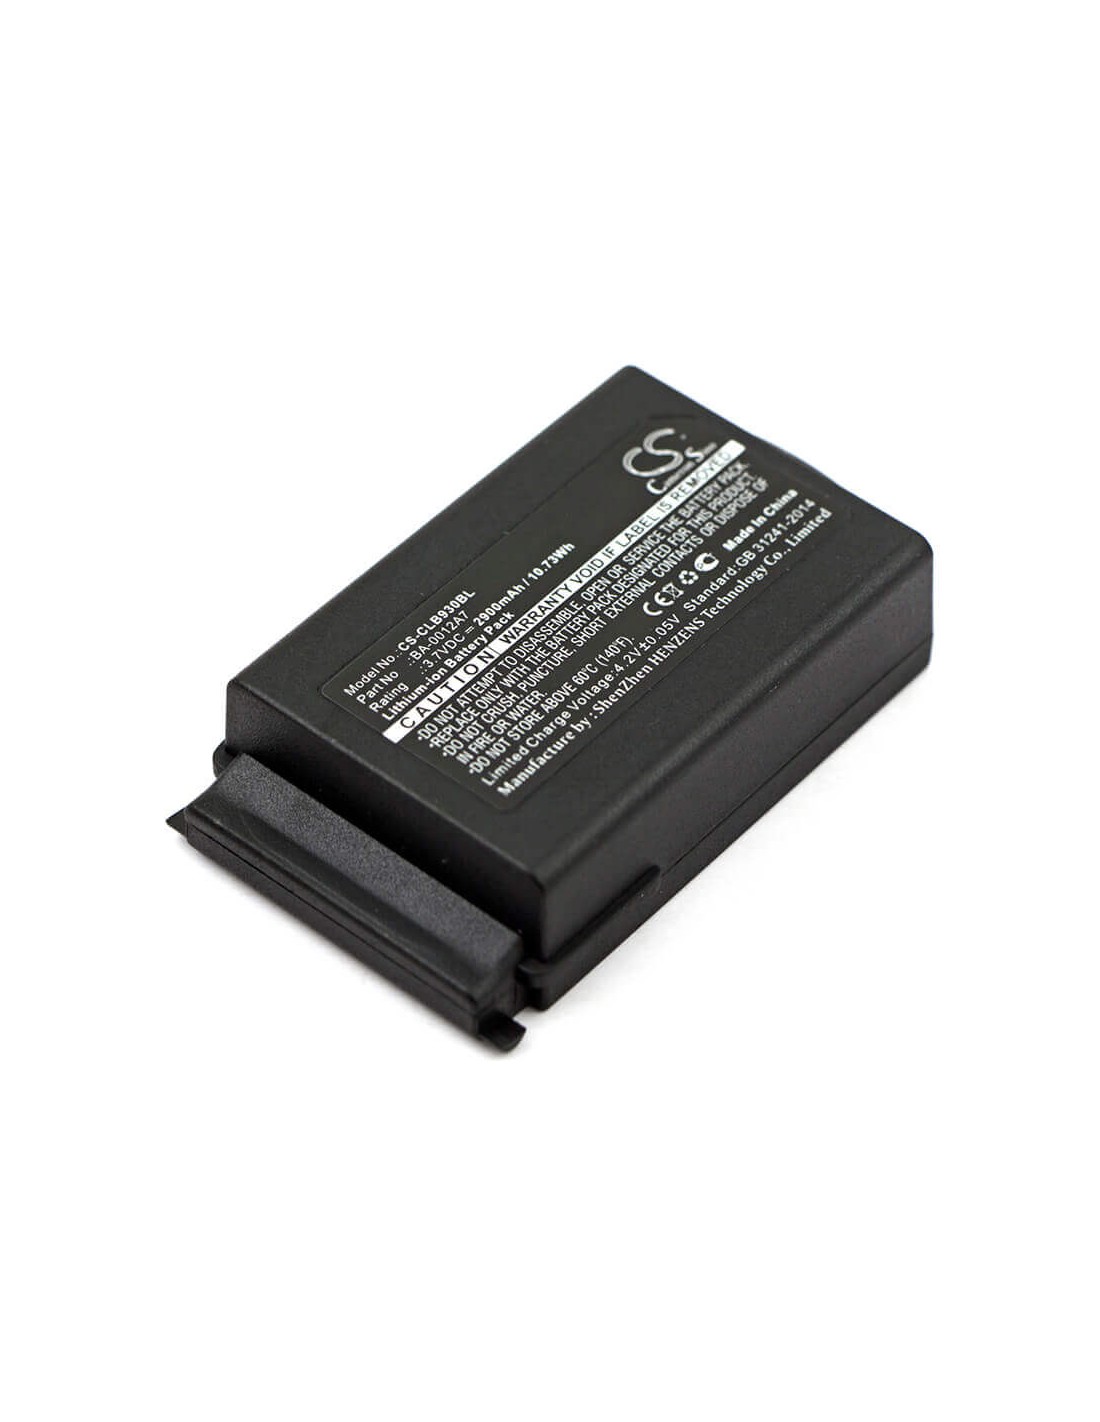 Battery for Cipherlab, 9300, 9400, 9600 3.7V, 2900mAh - 10.73Wh